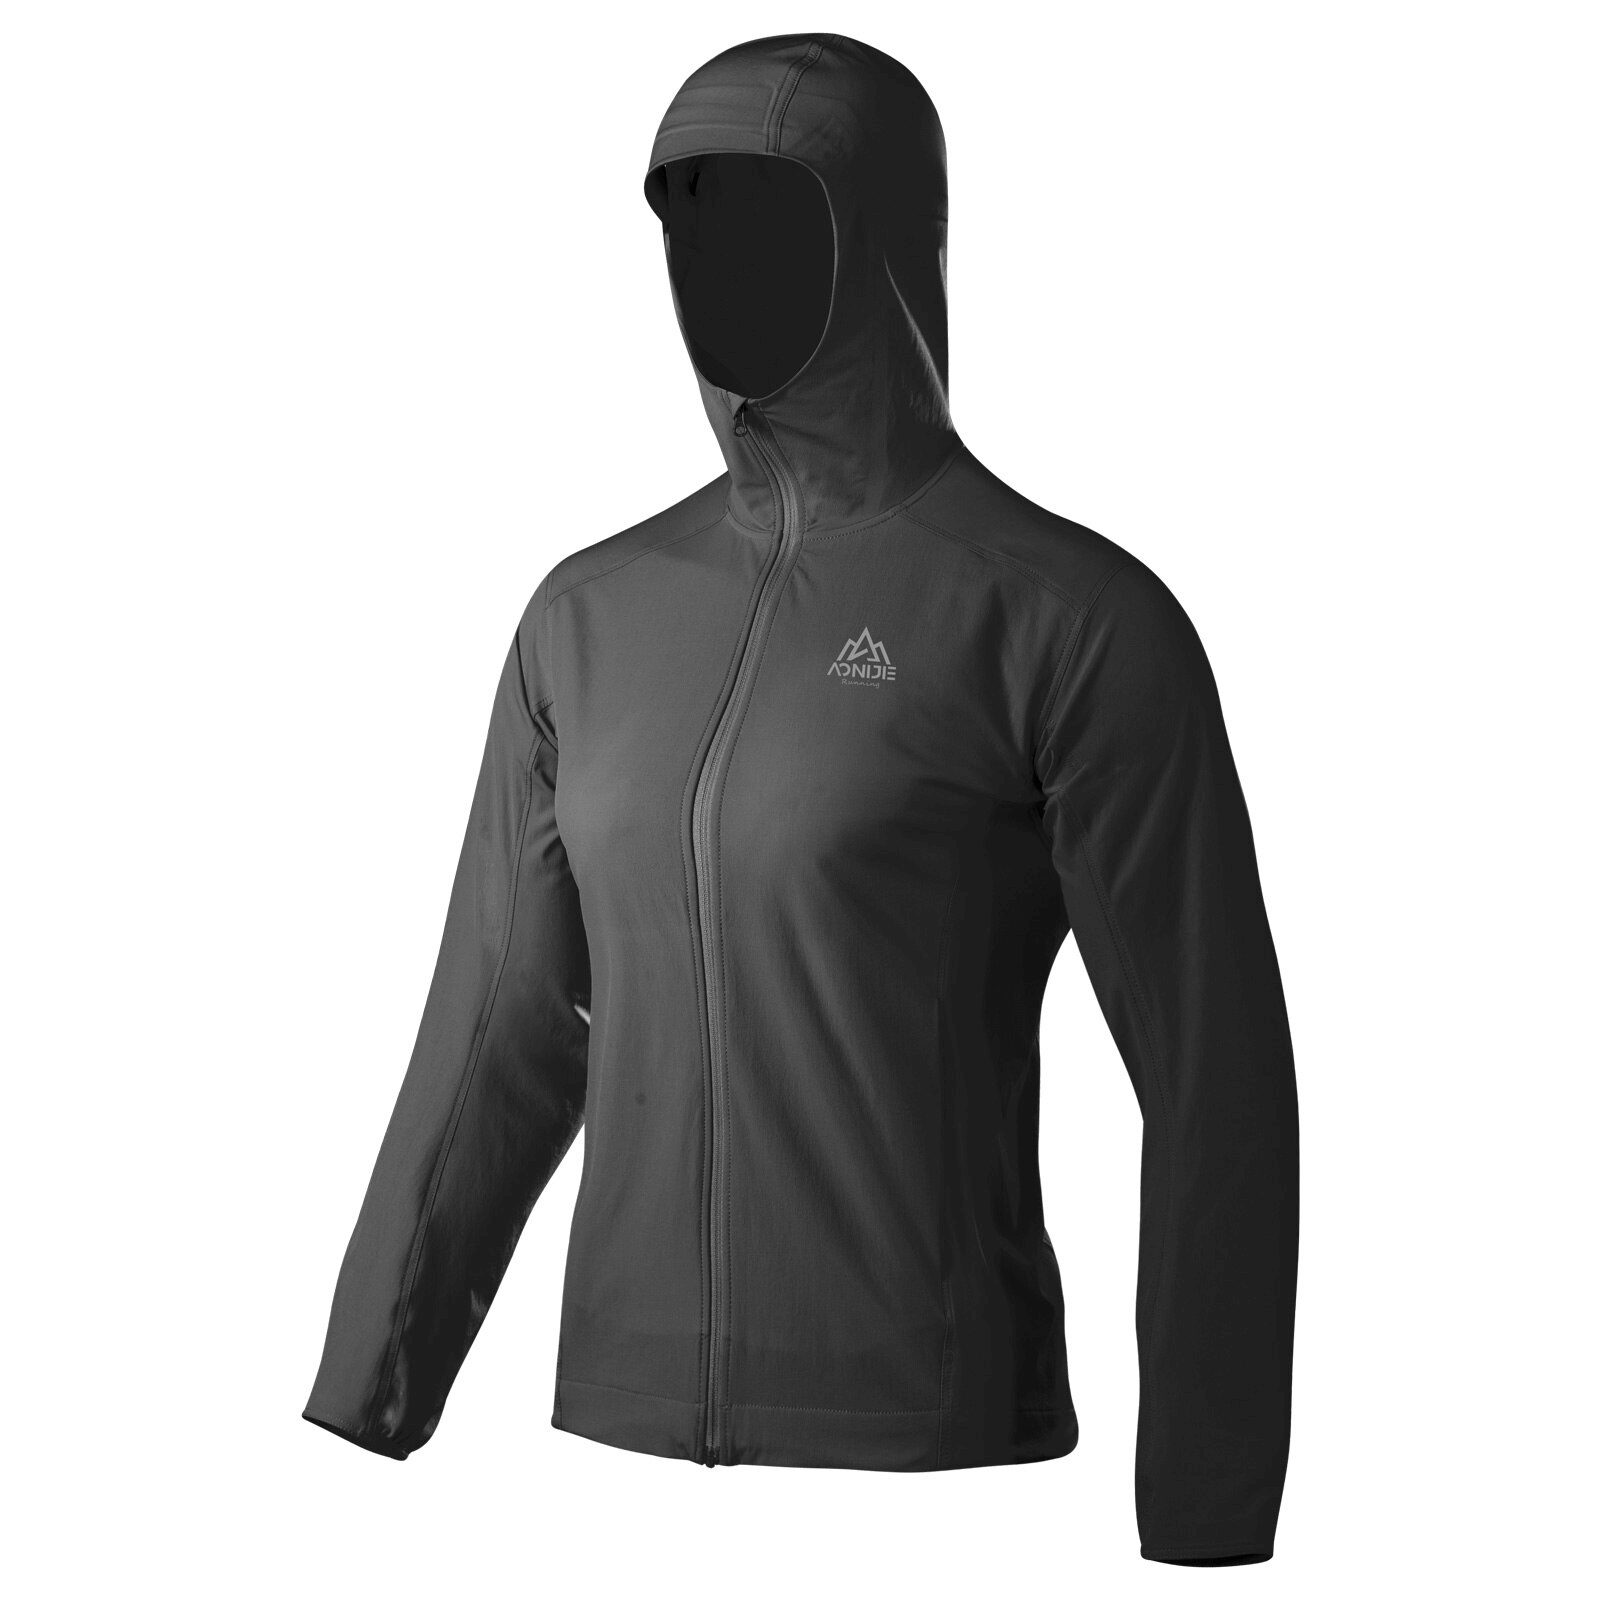 Waterproof Sports Thin Women's Jacket with Hood on Zipper - SF0897